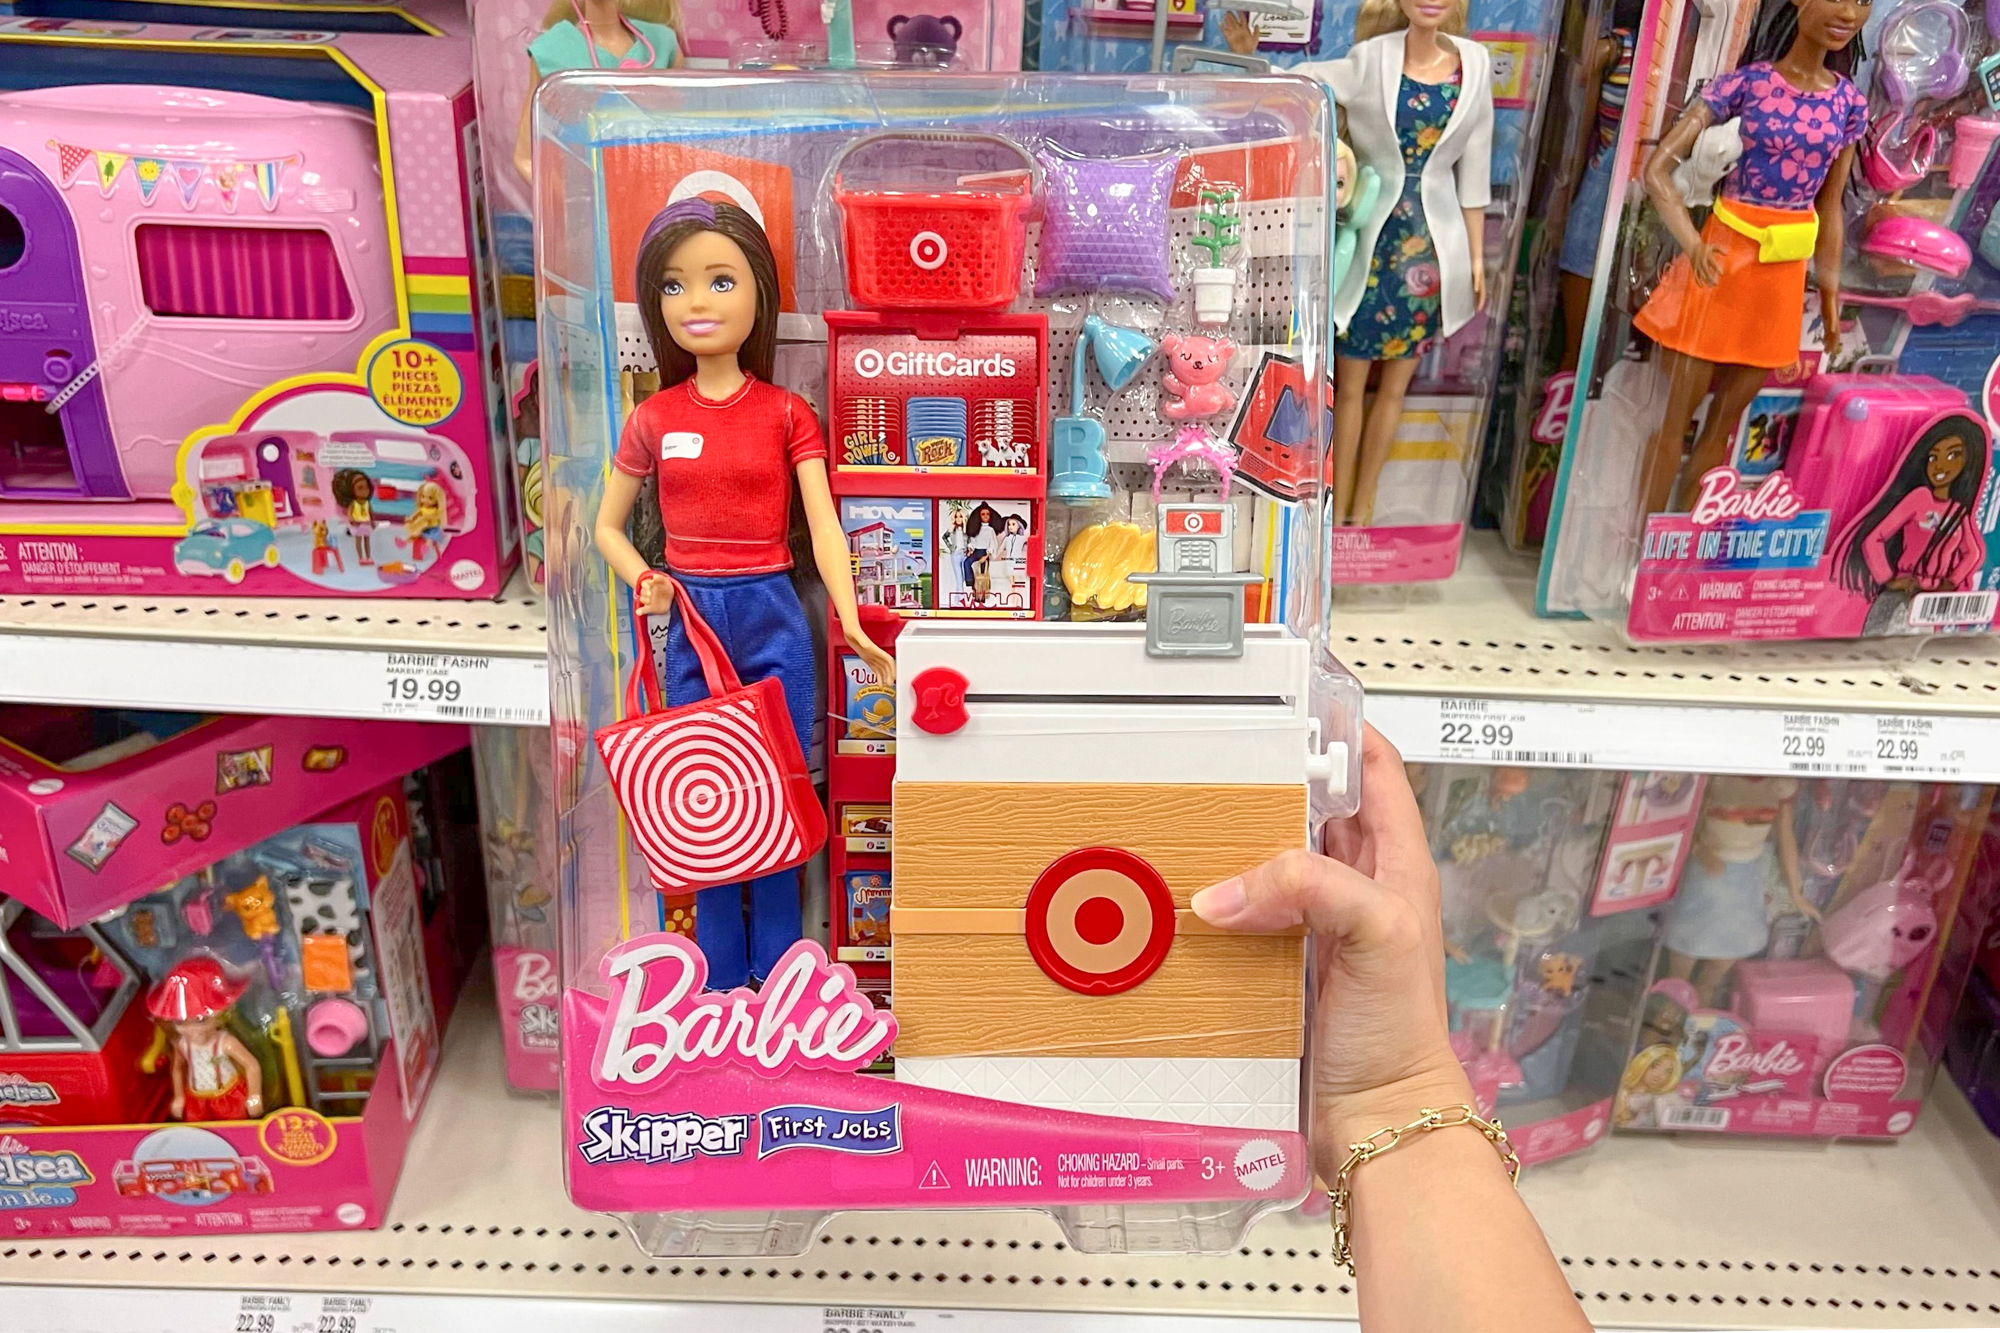 Barbie Skipper first job Target worker doll 